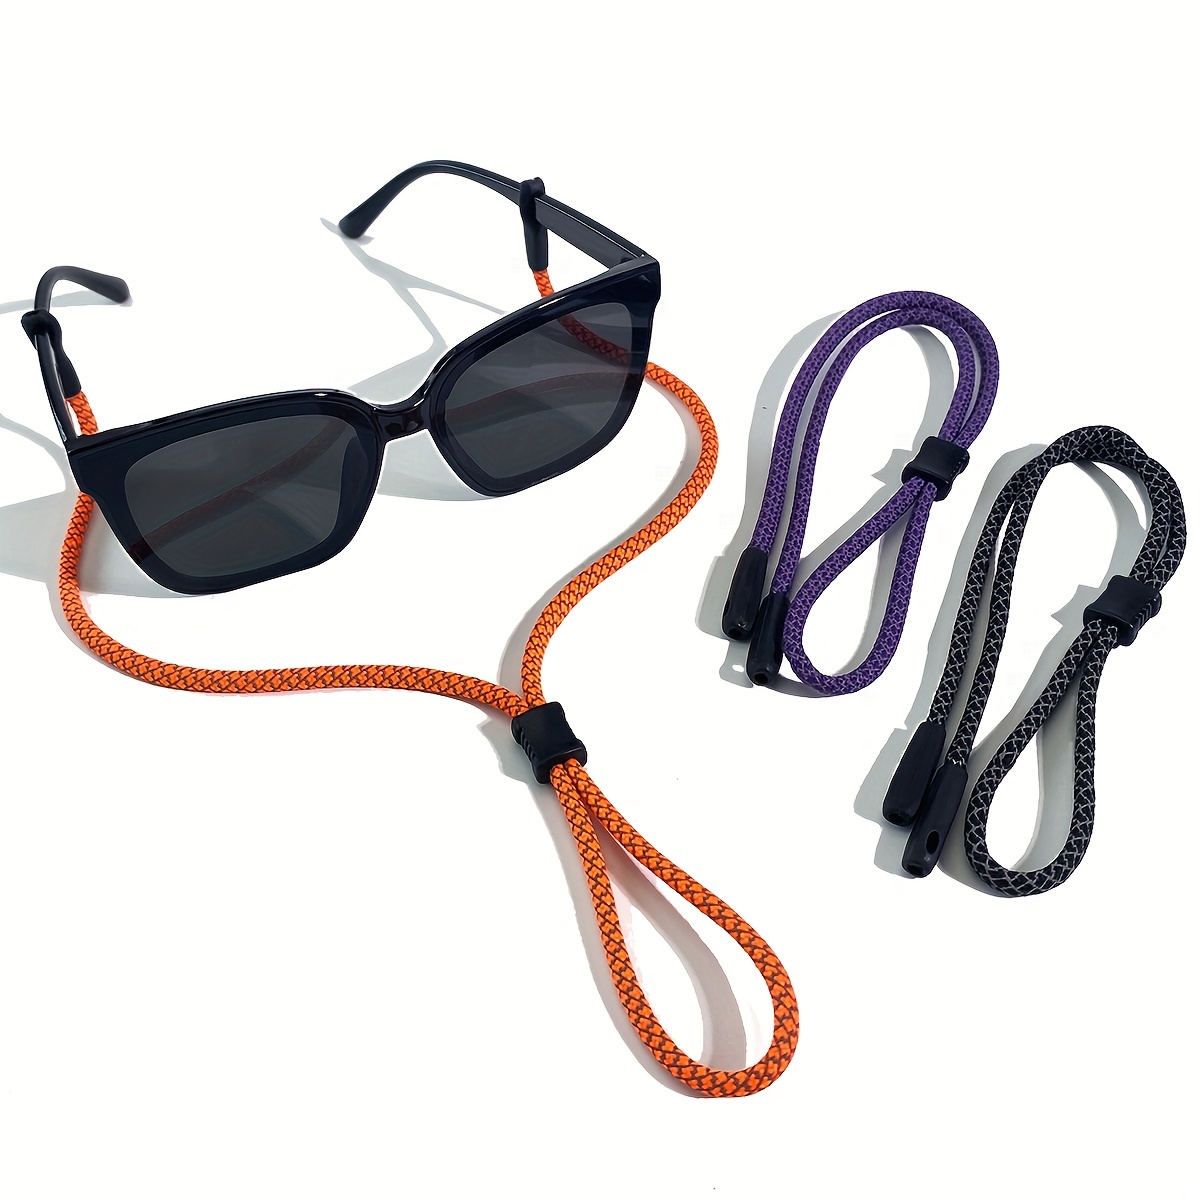 Sunglass Strap for Men&Women Floating, Sunglass Holder Strap -neoprene  strap for glasses,sunglasses lanyards for women sunglass strap for men